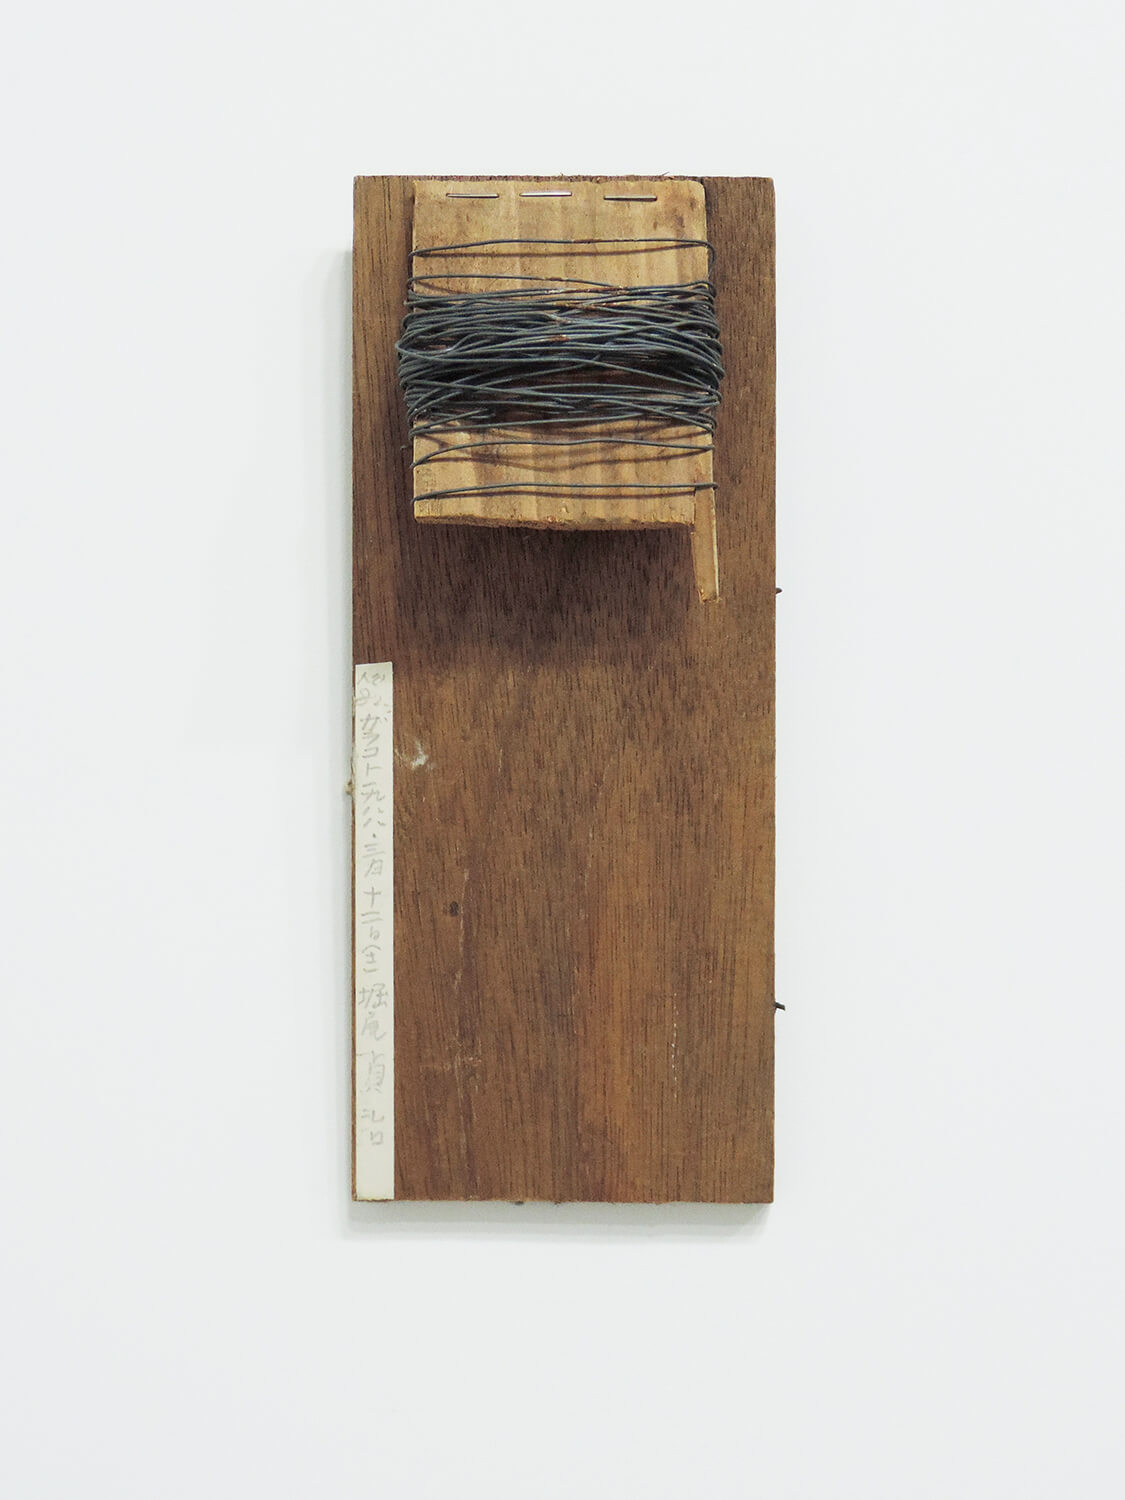 <b>Garagoto / ガラコト</b><br>Wire, staple, wood　25.3 x 10.3 x 4 cm　1988